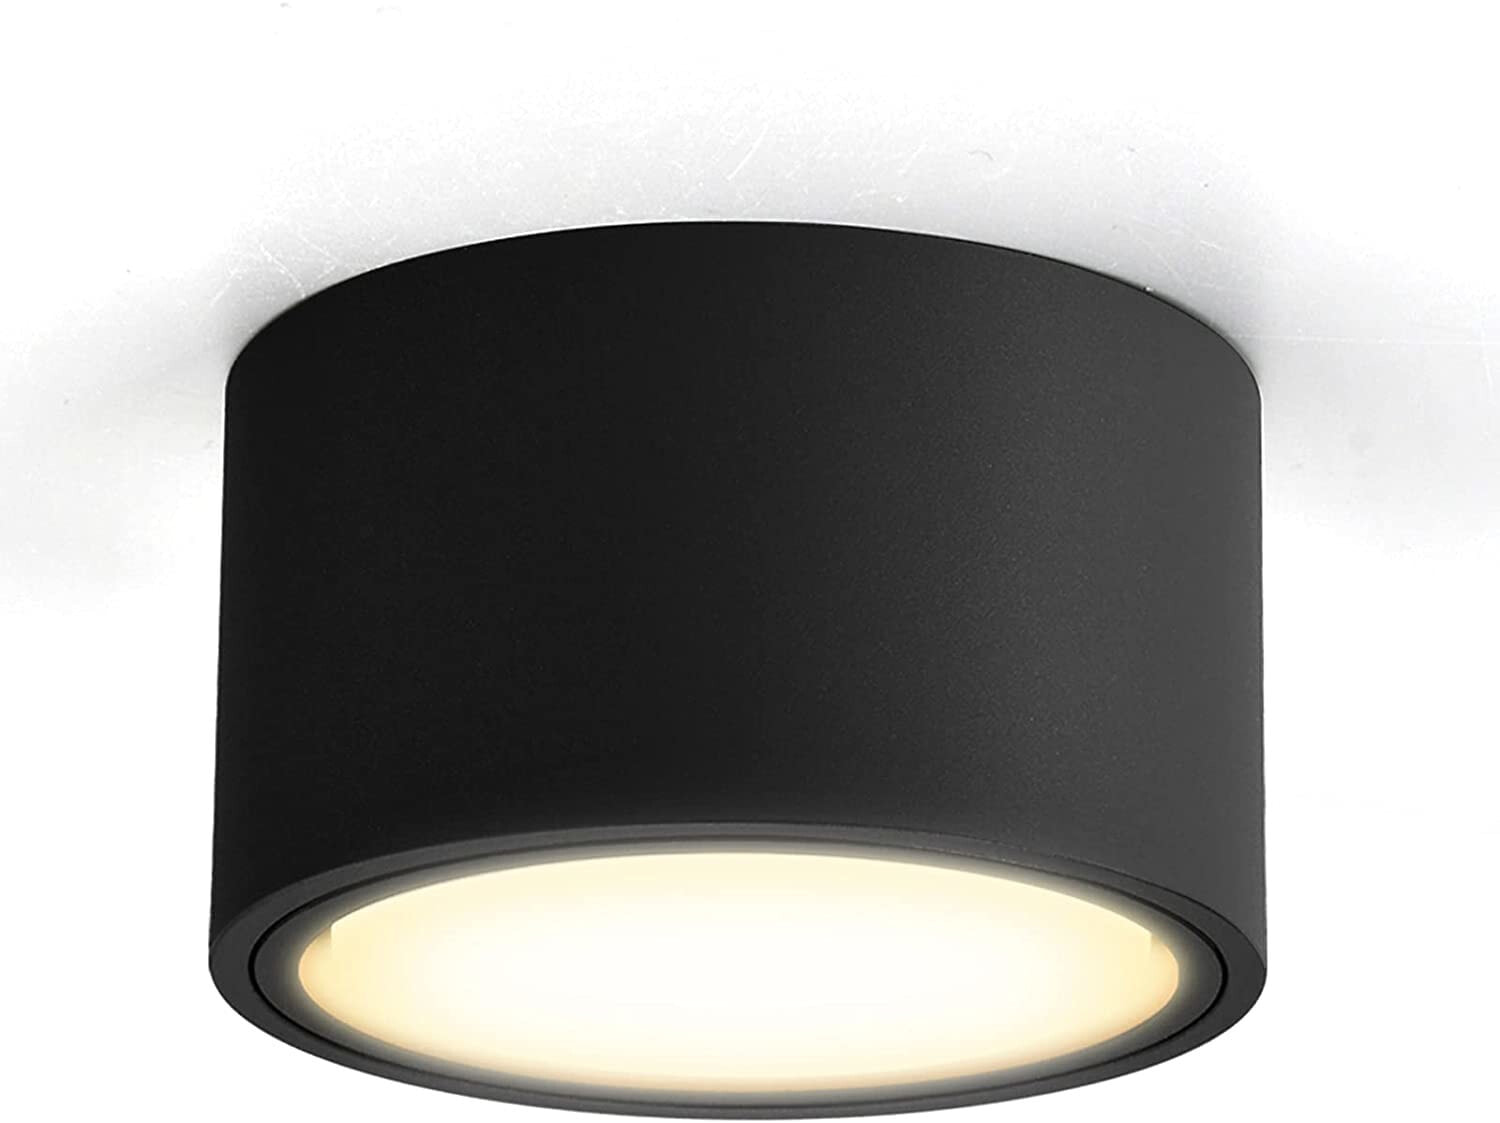 OPPER LED накладной потолочный светильник, плоский со светодиодами GX53 230 В, 6 Вт, теплый белый, 3000 K, потолочный светильник, диаметр 95 x 55 мм, черный, круглый [энергетический класс A +]